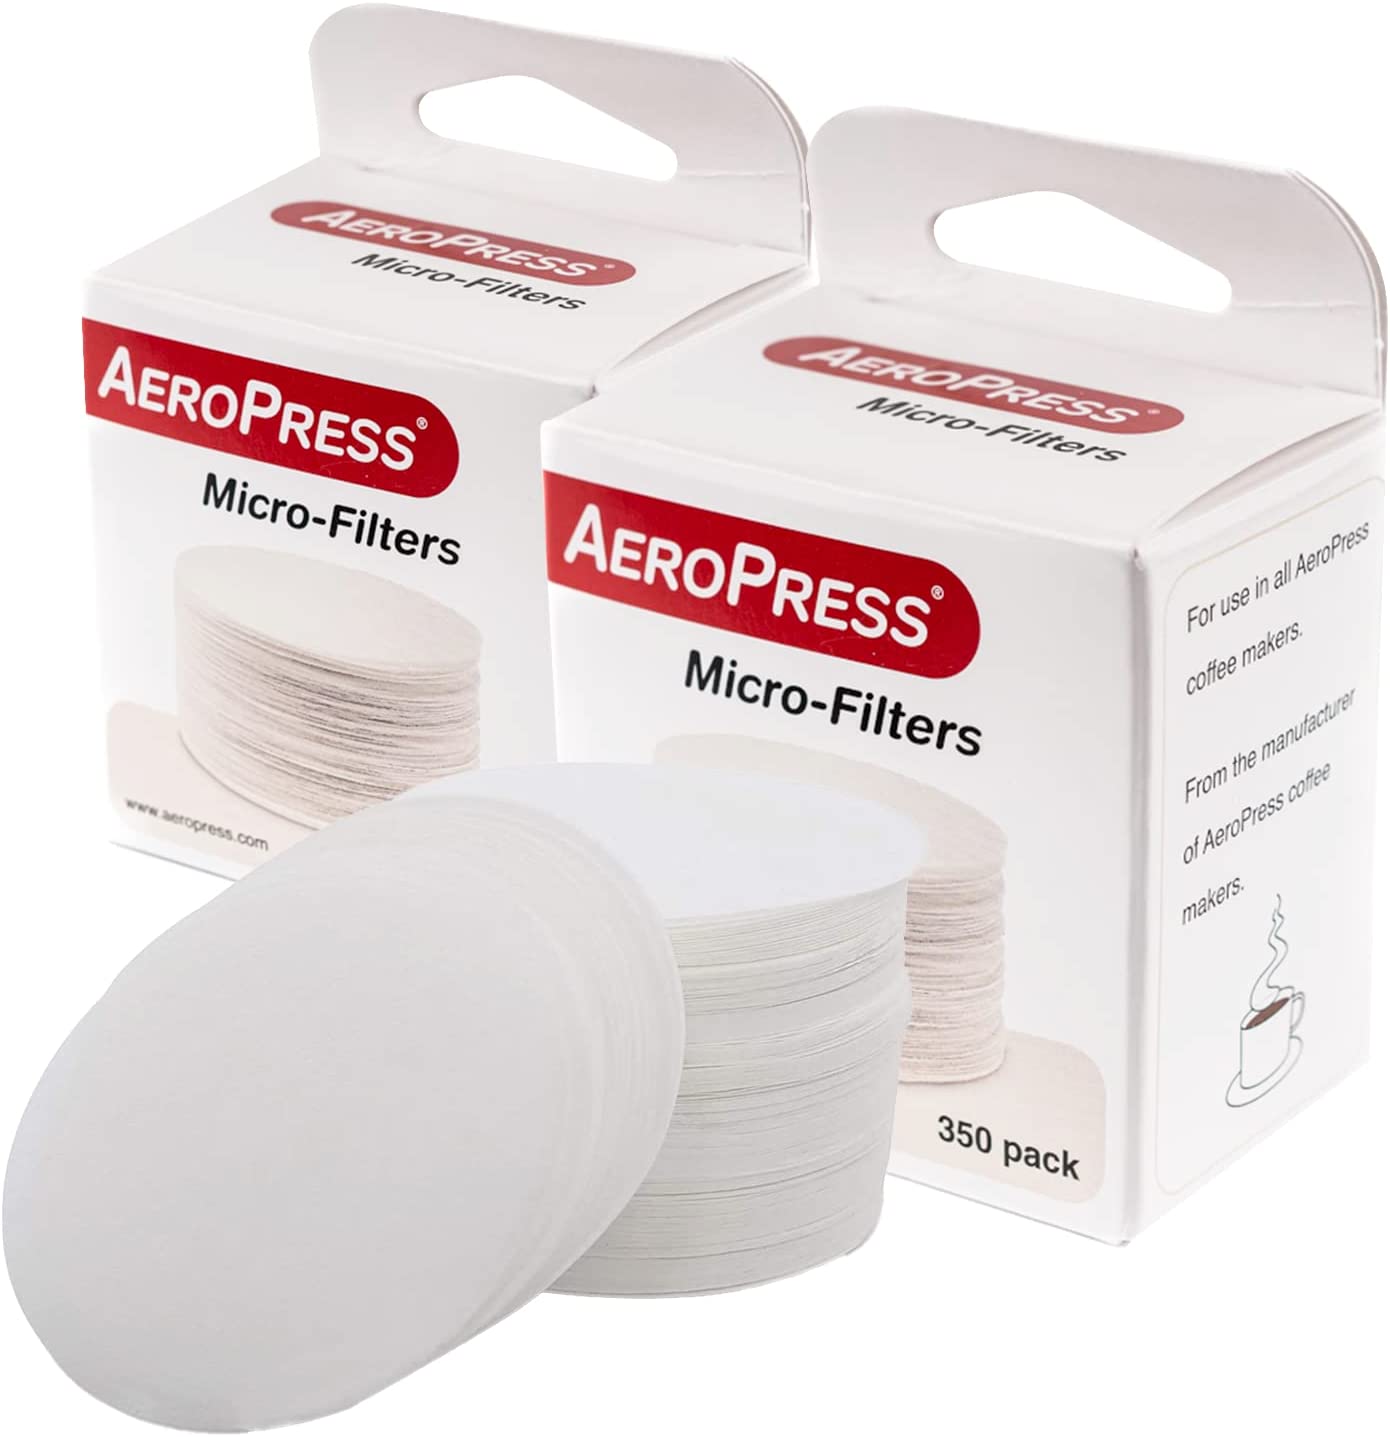 AeroPress Filters x 2